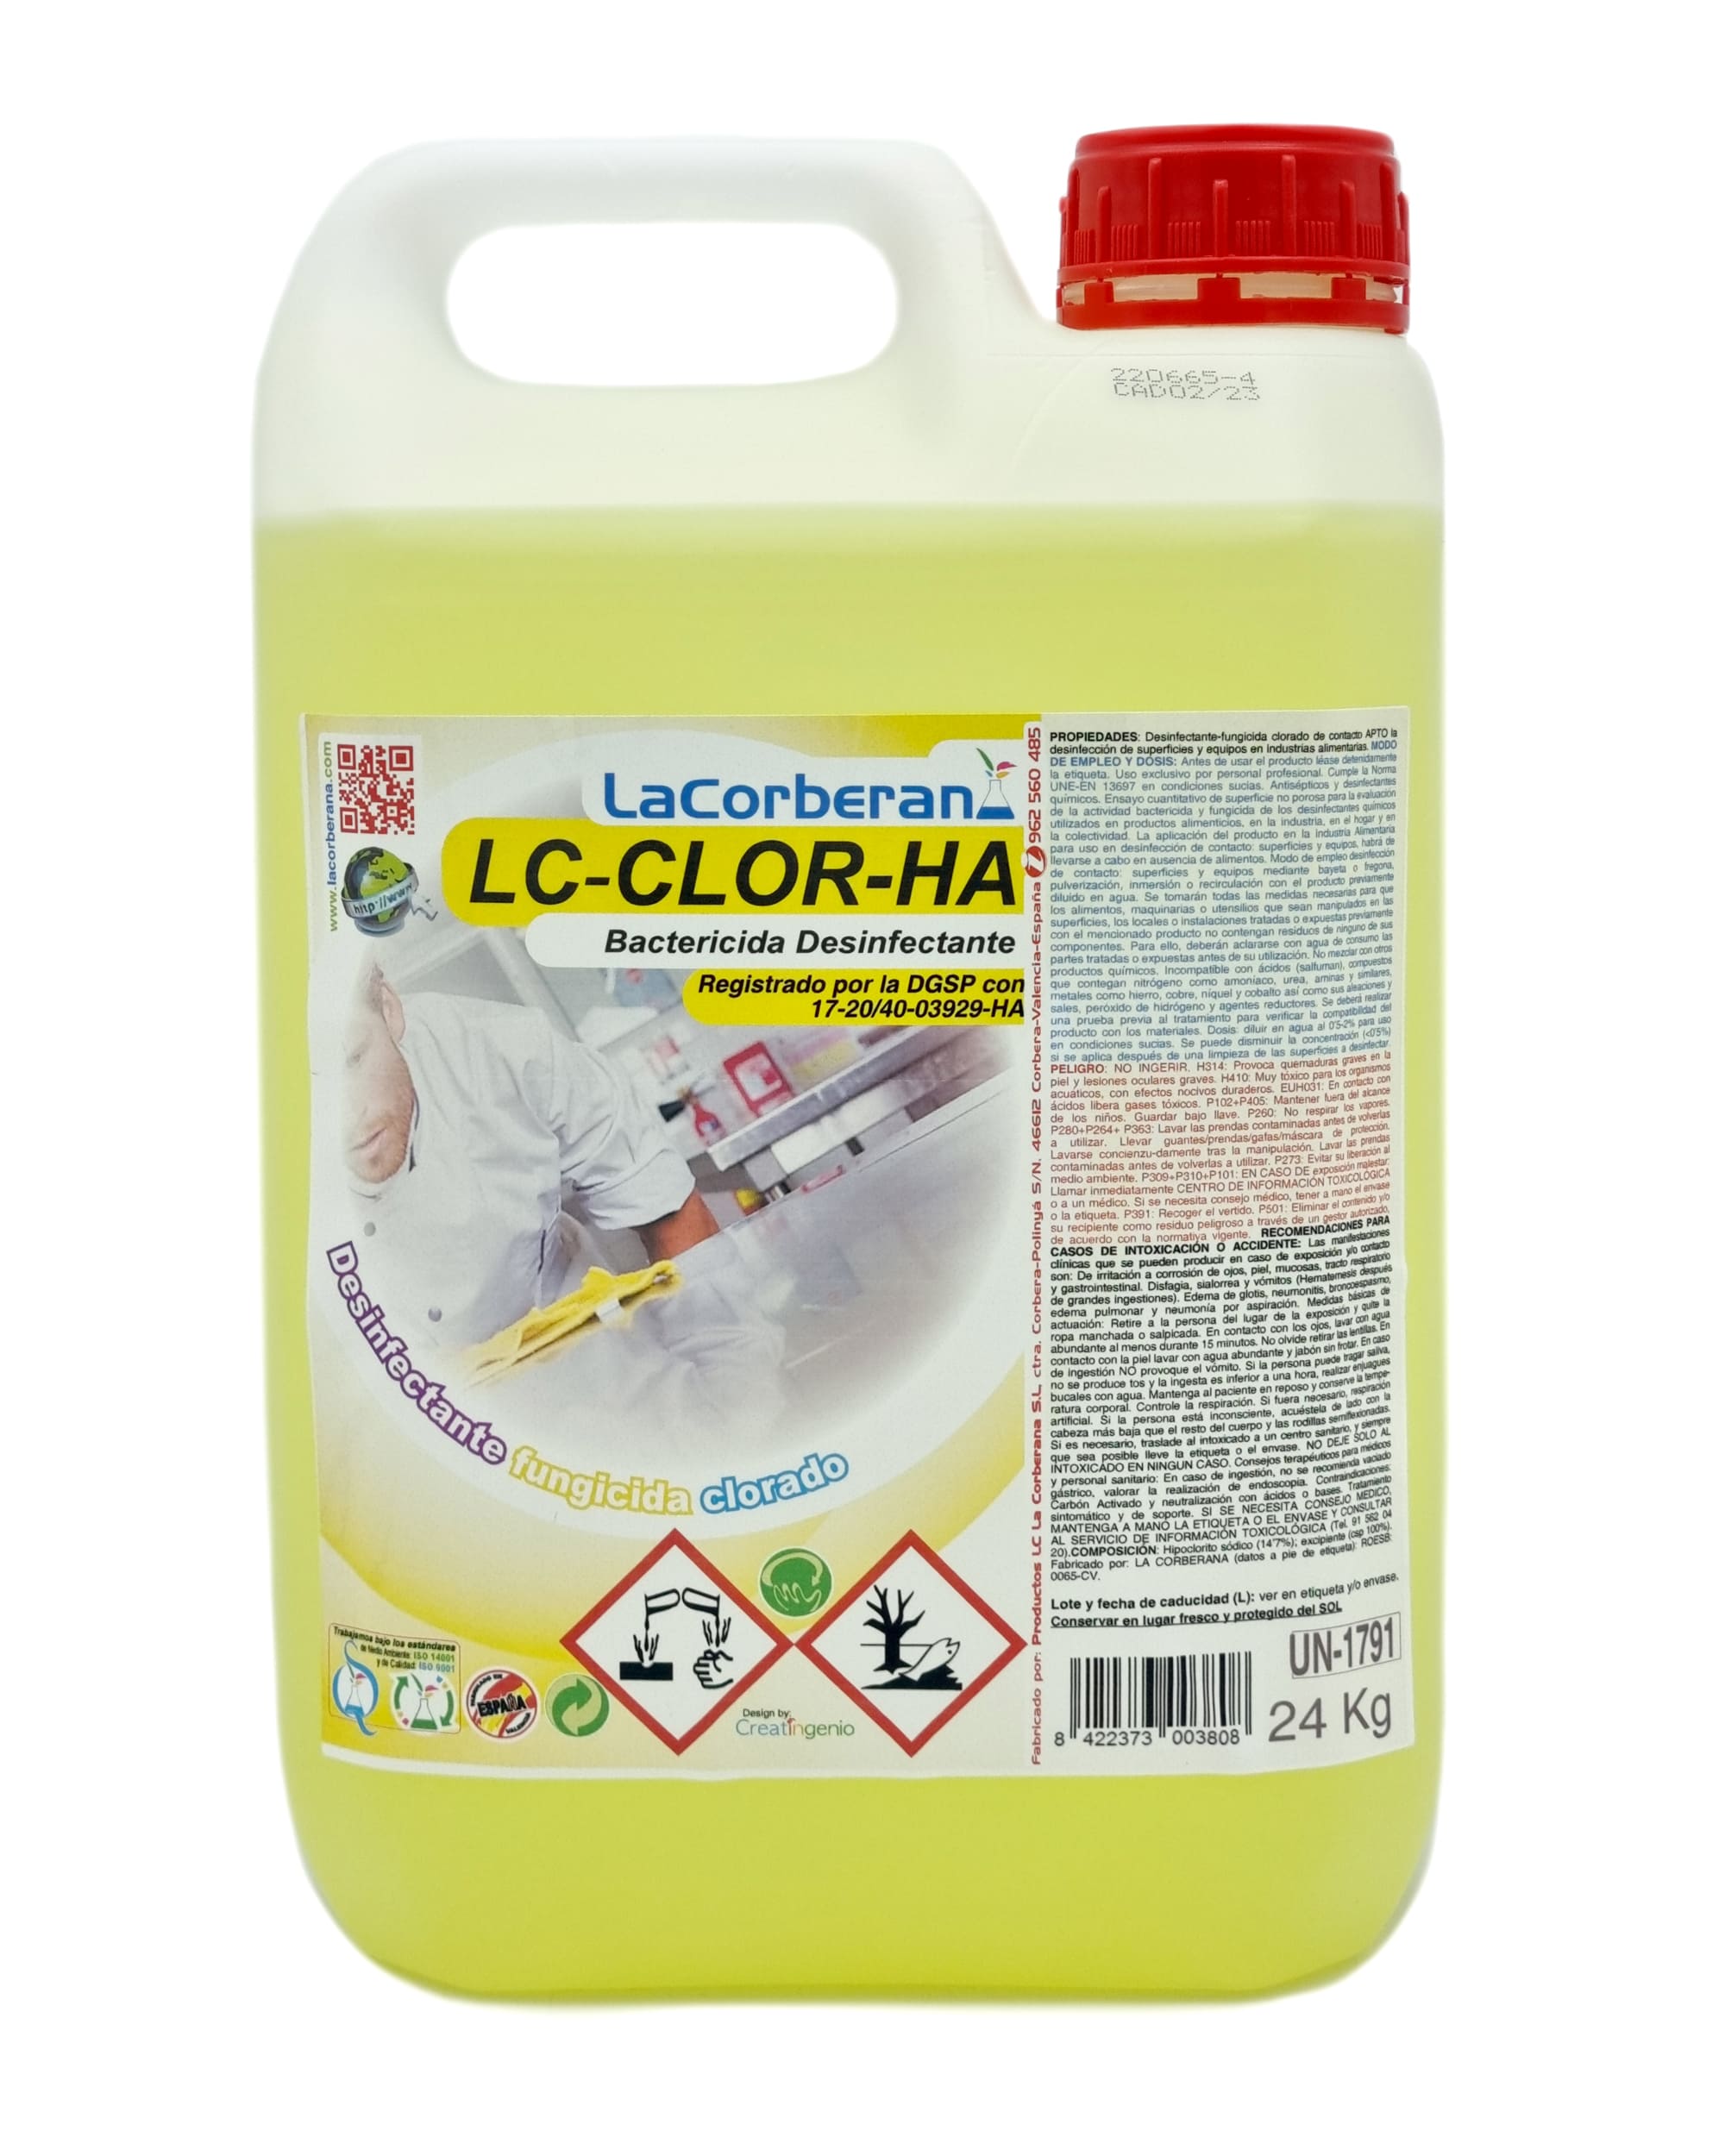 Desinfectante clorado extra concentrado para agua potable y control de legionela. Ideal para mantener el agua limpia y segura.